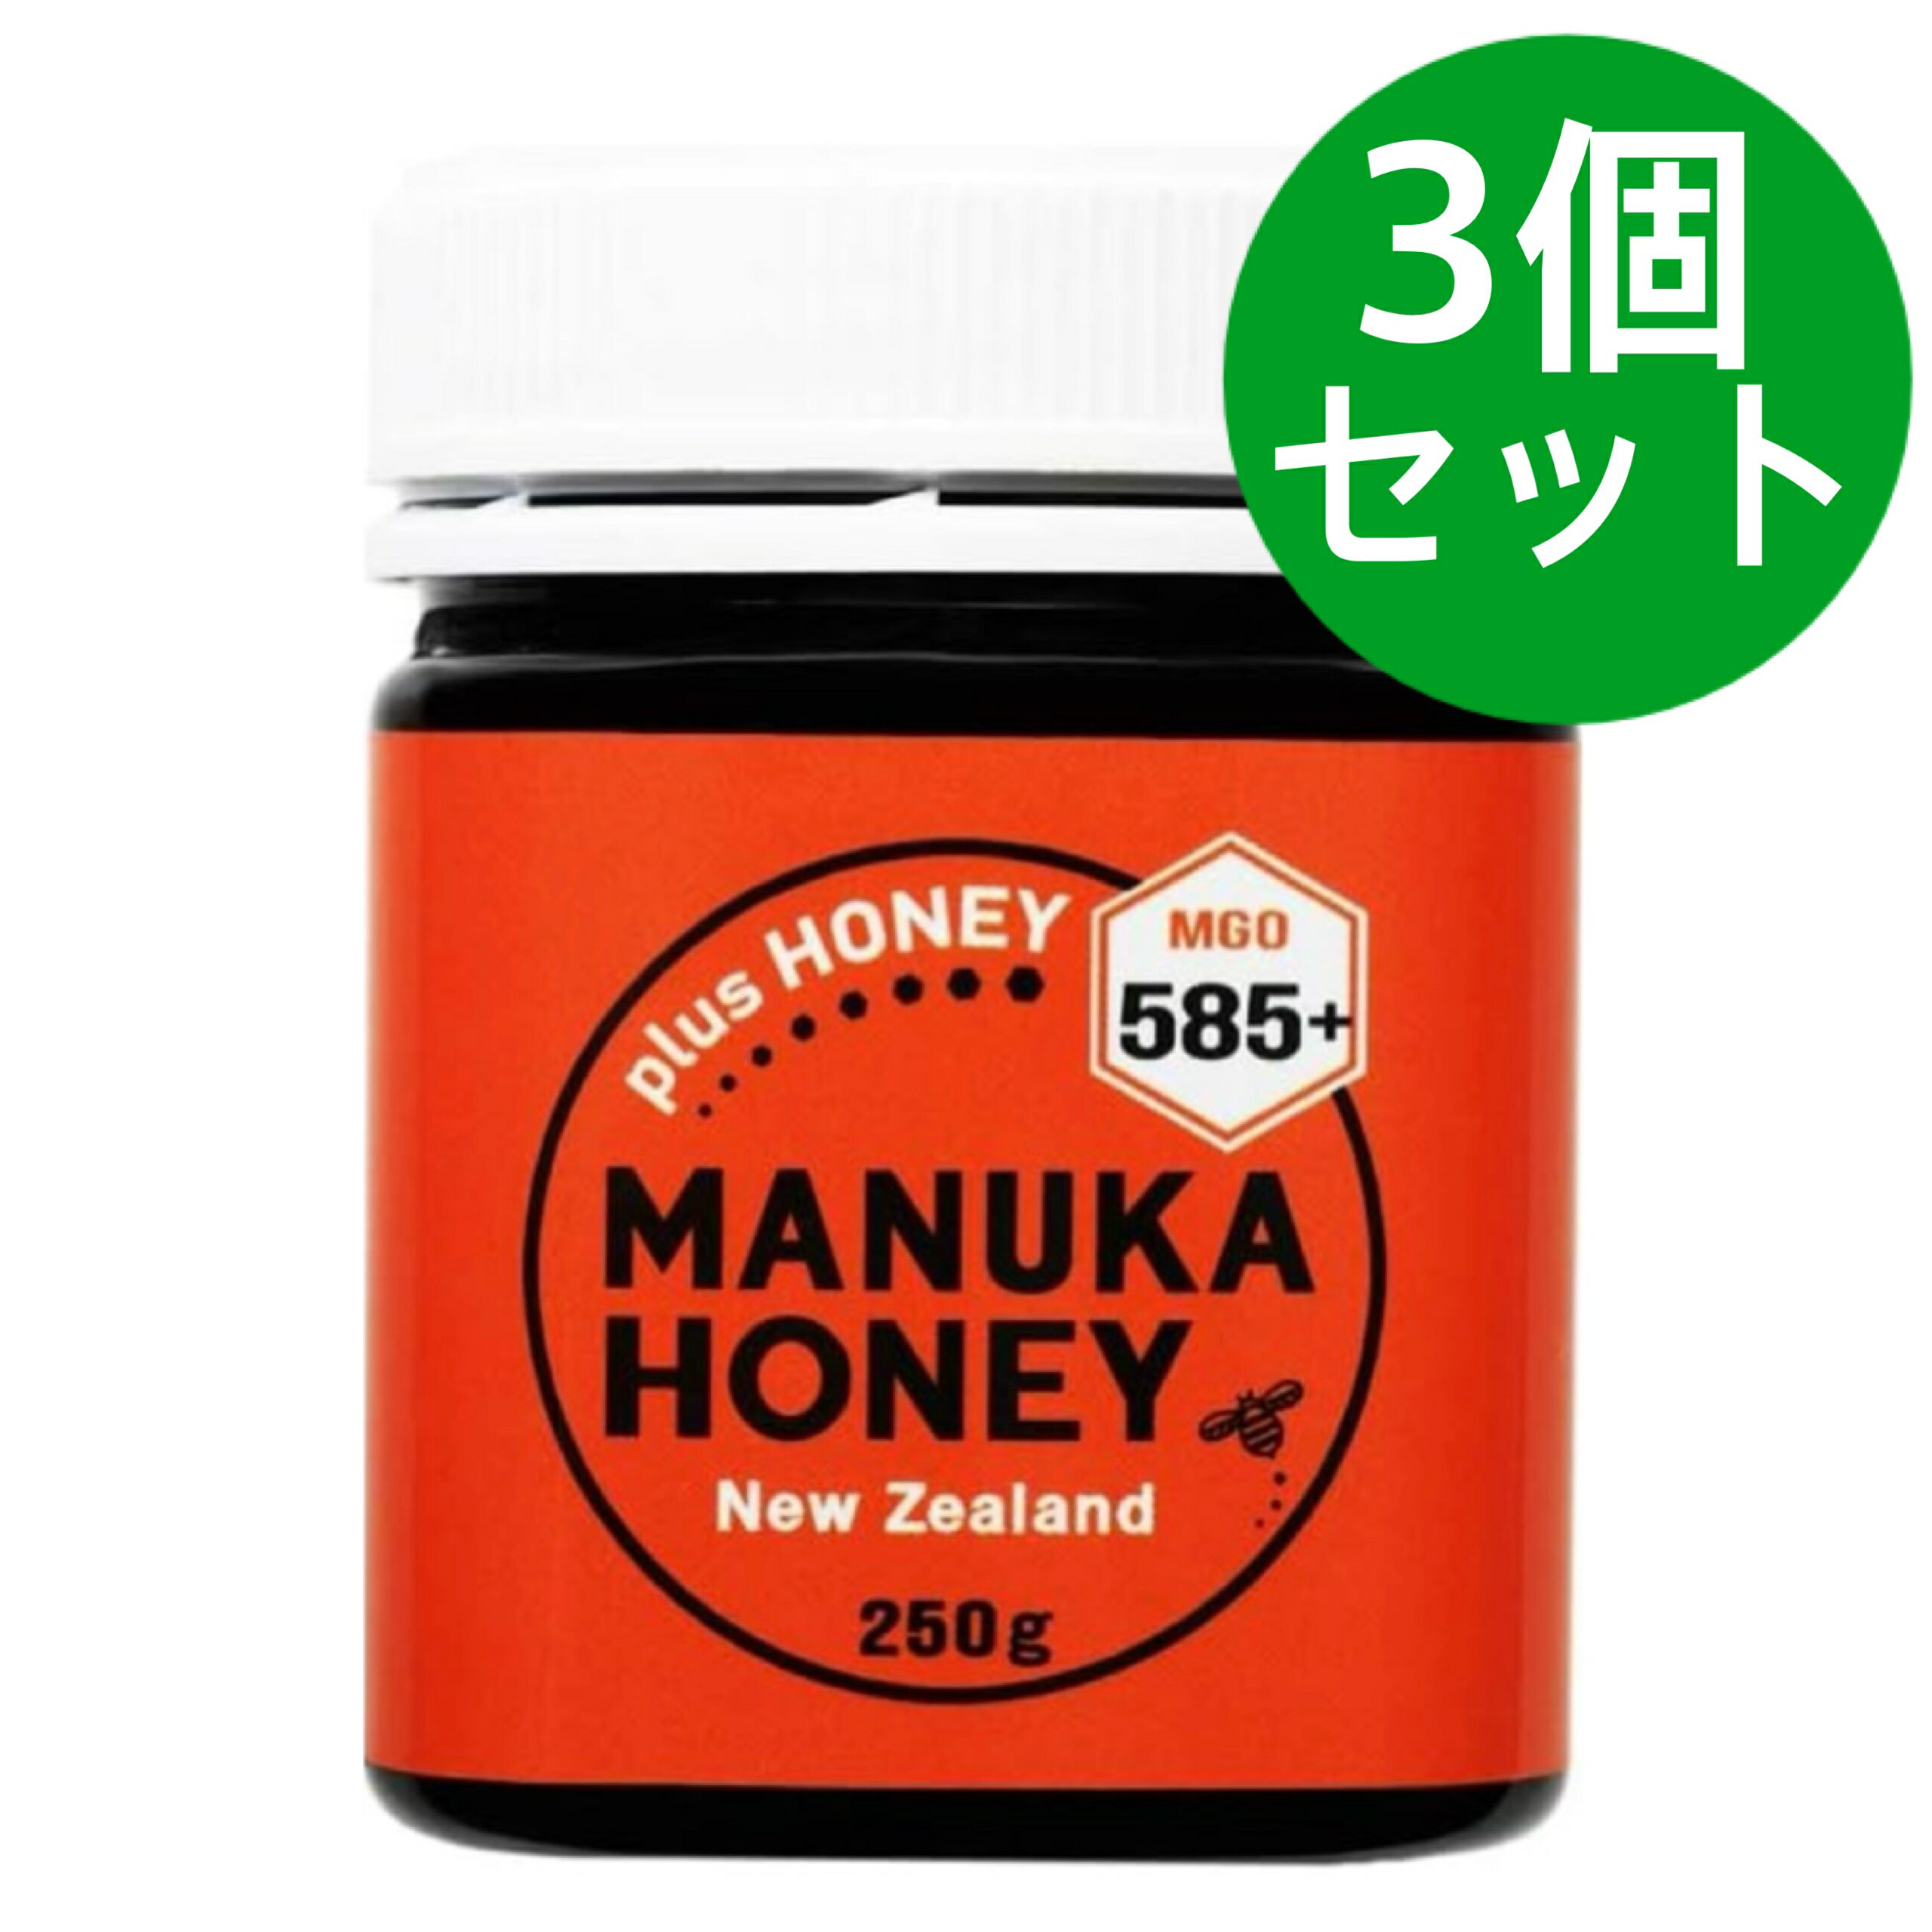 マヌカハニー MGO585+ 250g plusHONEY はちみつ マヌカ蜂蜜 ニュージーランド産【3個セット】 みなさまが健康と笑顔の毎日を過ごせますよう、補助的な役割として是非ご利用ください。 ■マヌカハニーは、「メチルグリオキサール...